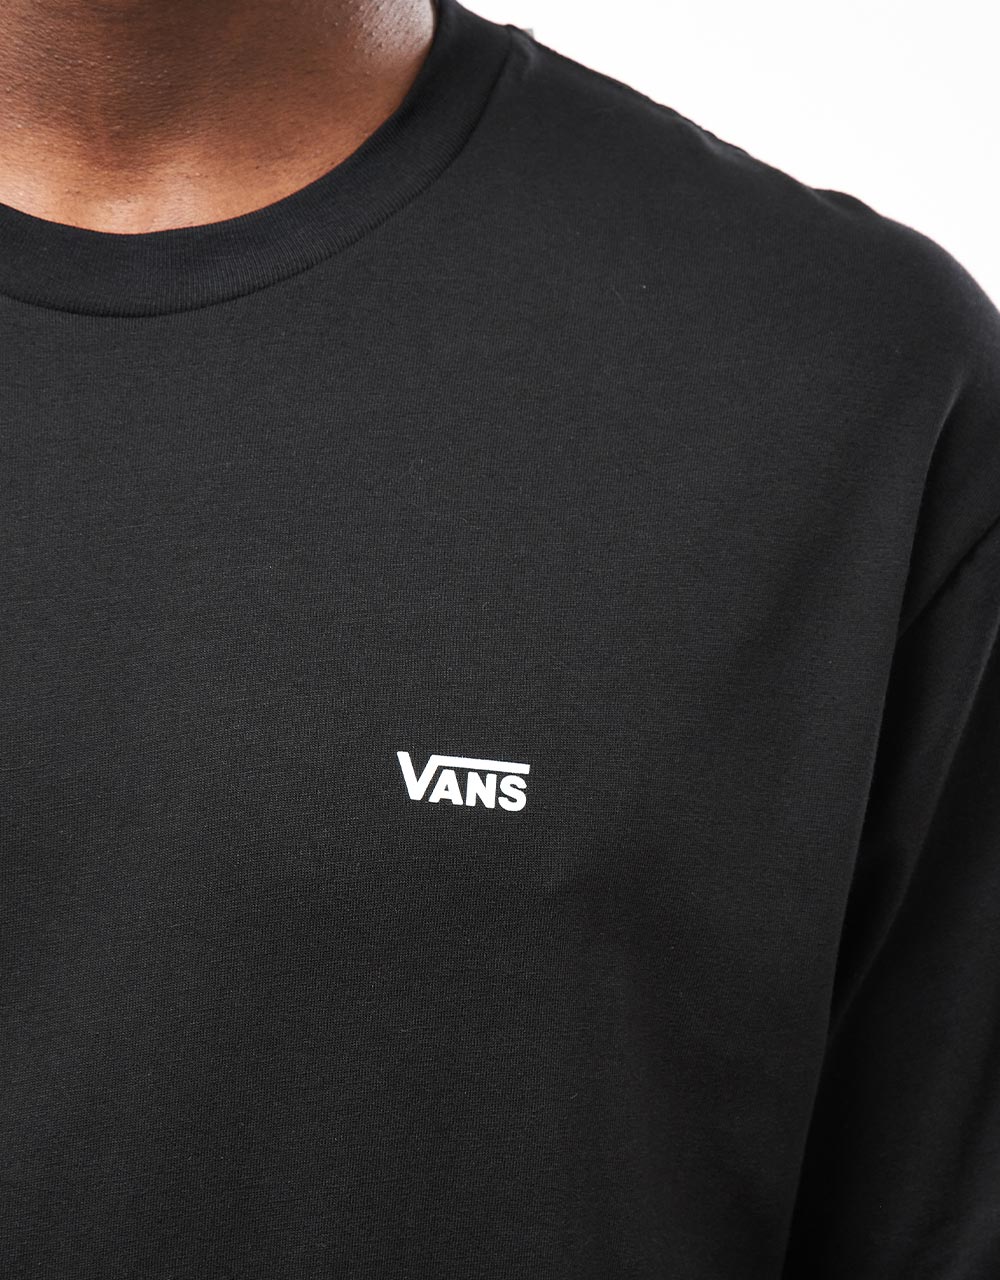 Vans Left Chest Logo T-Shirt - Black